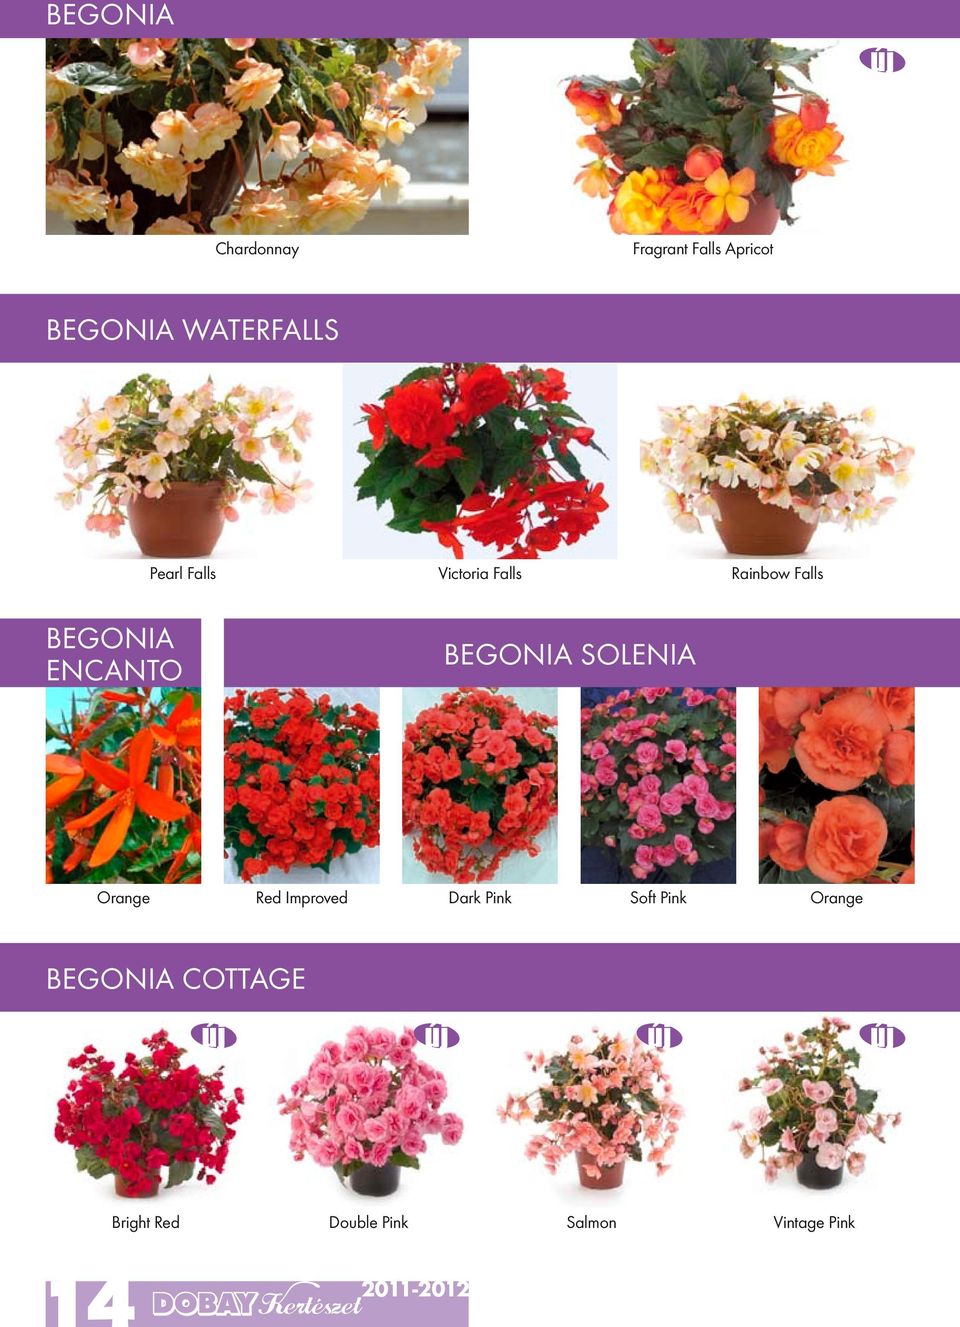 encanto Begonia solenia Orange Red Improved Dark Pink Soft